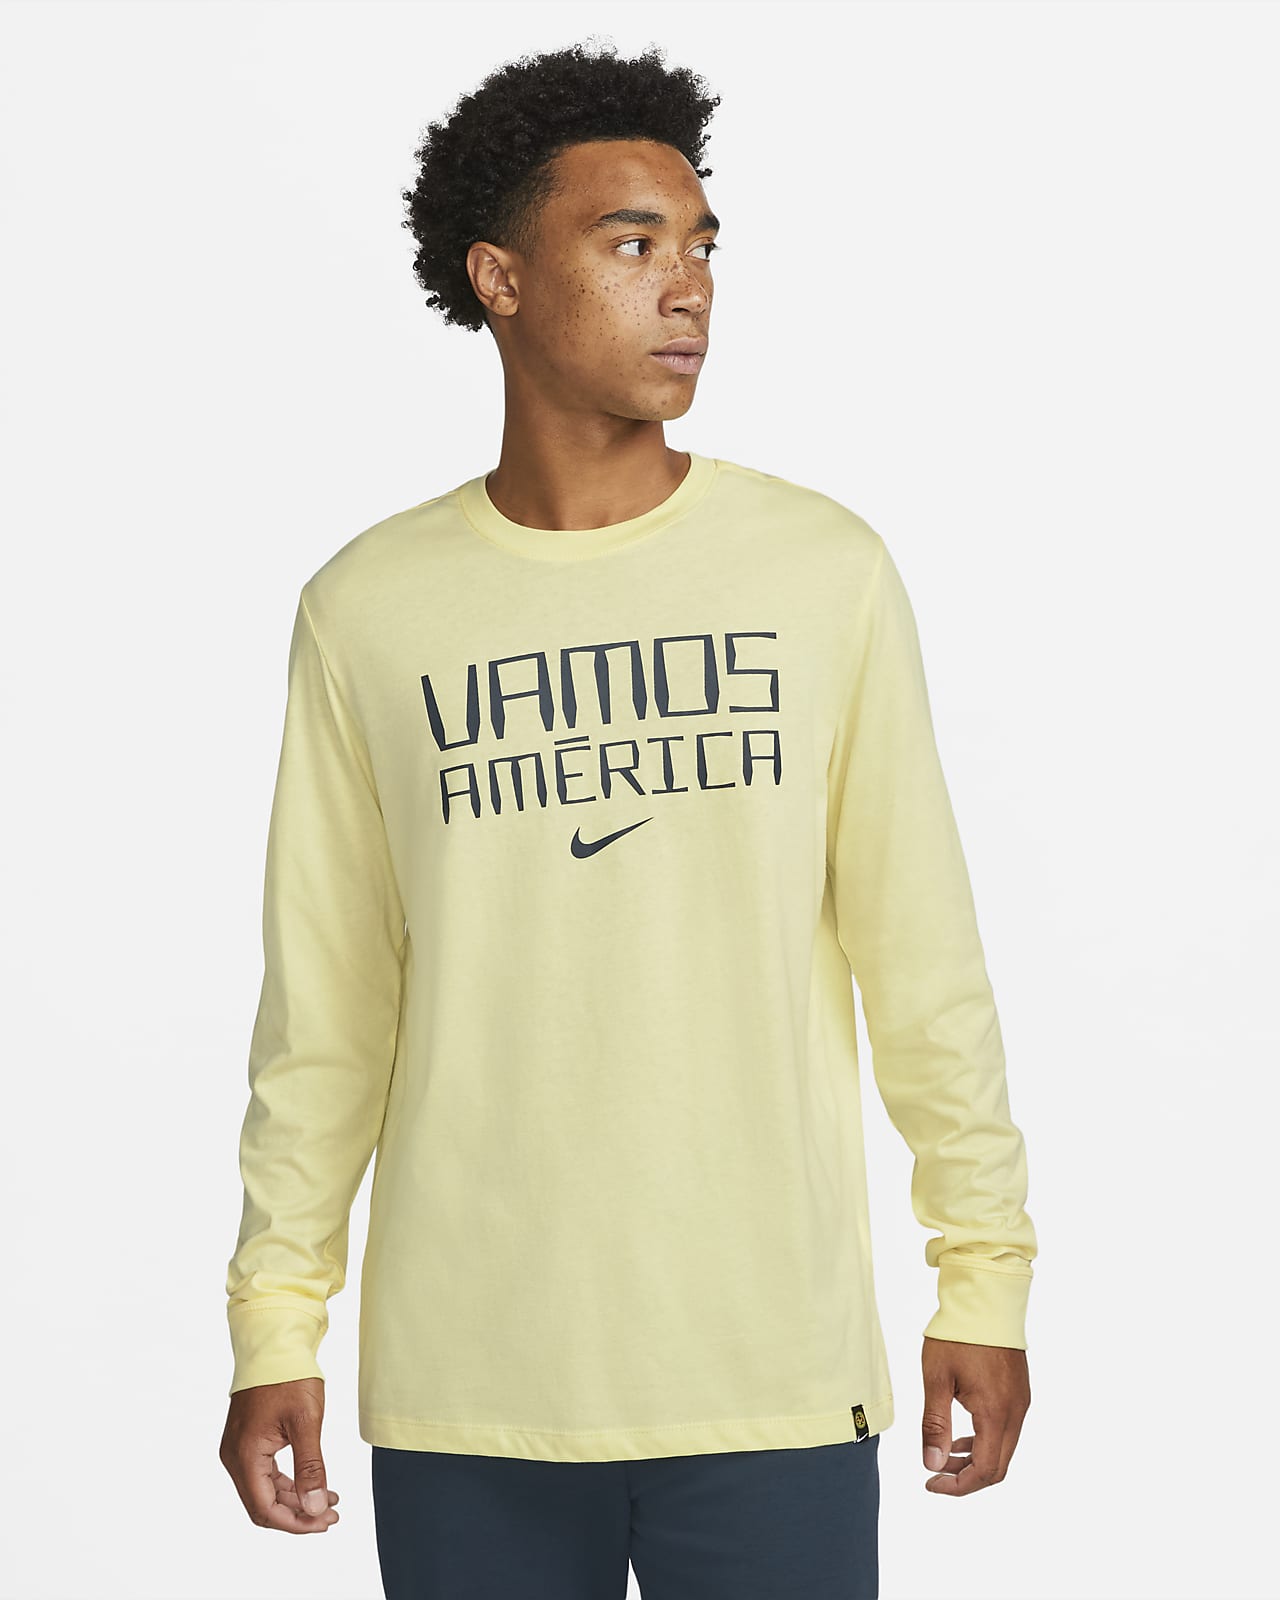 Club América Men's Long-Sleeve Soccer T-Shirt